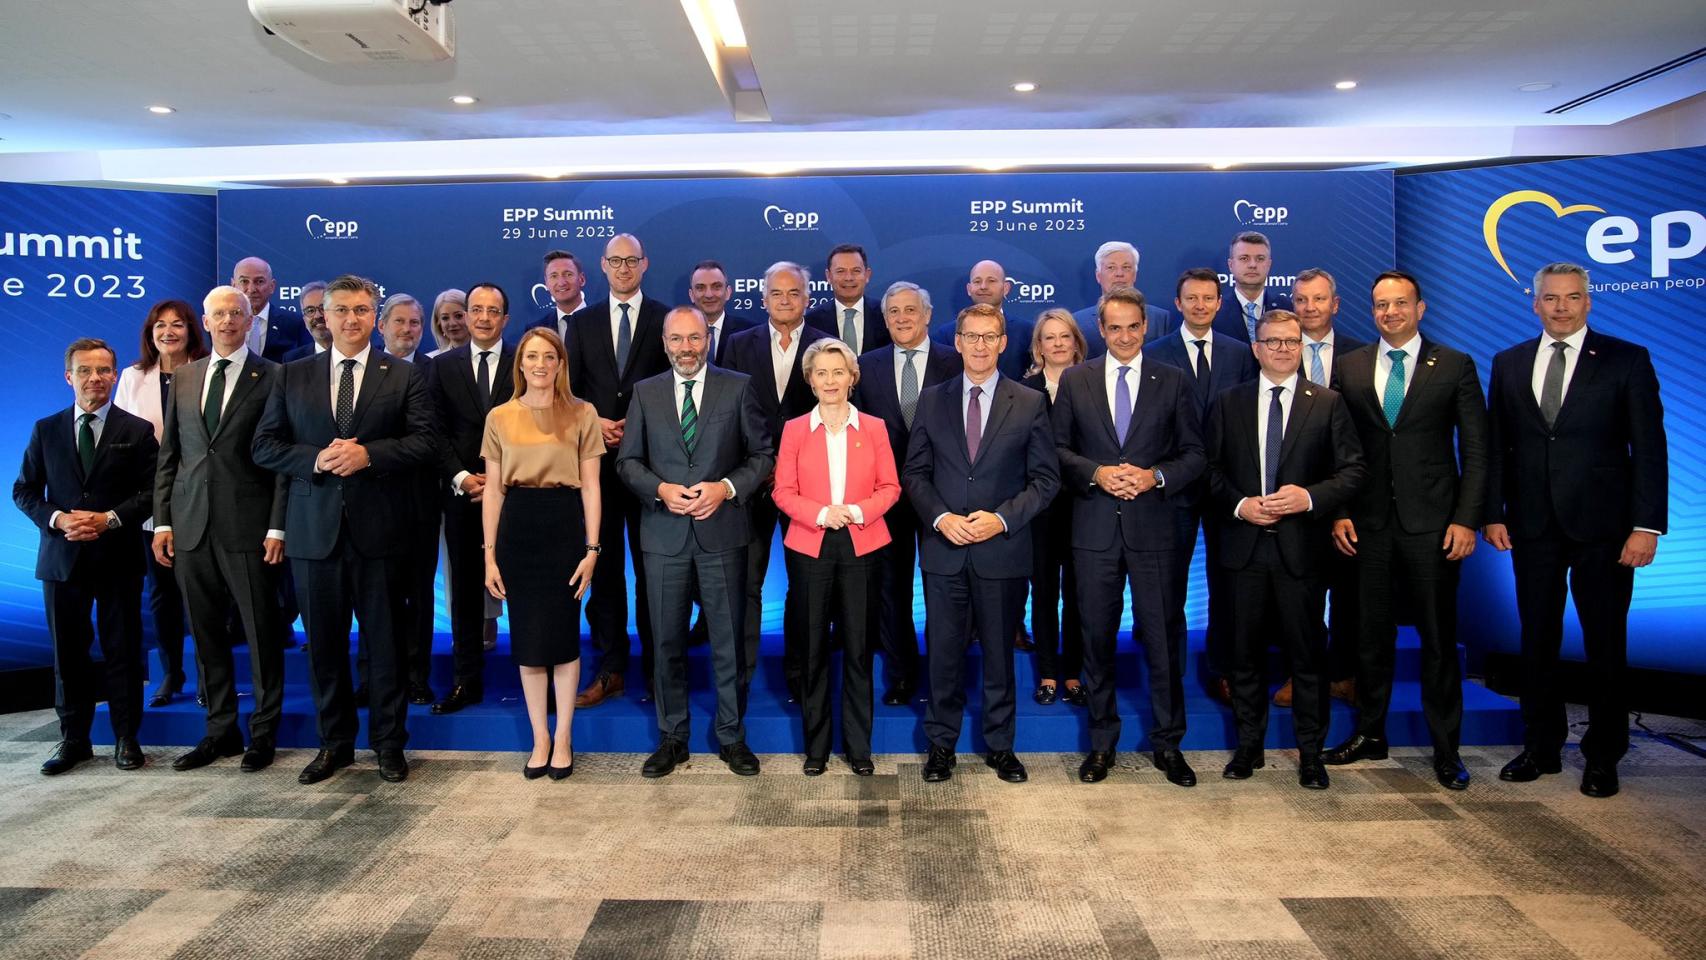 Foto de familia de la reunión del PP Europeo, con Feijóo ubicado en primera fila, entre los primeros ministros.